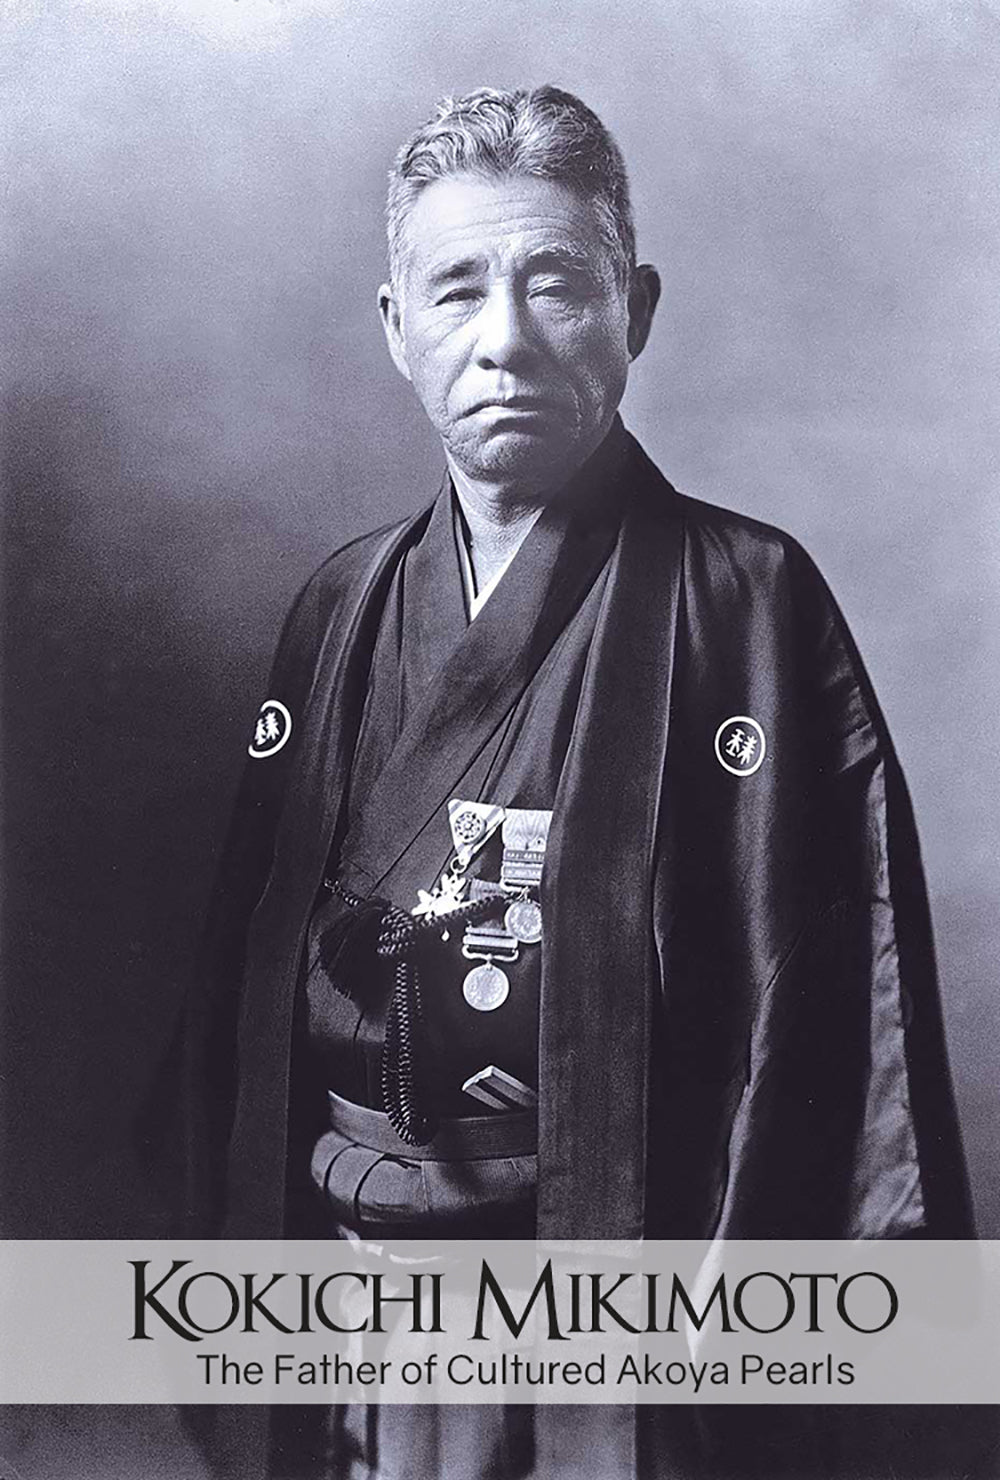 Kokichi Mikimoto portrait